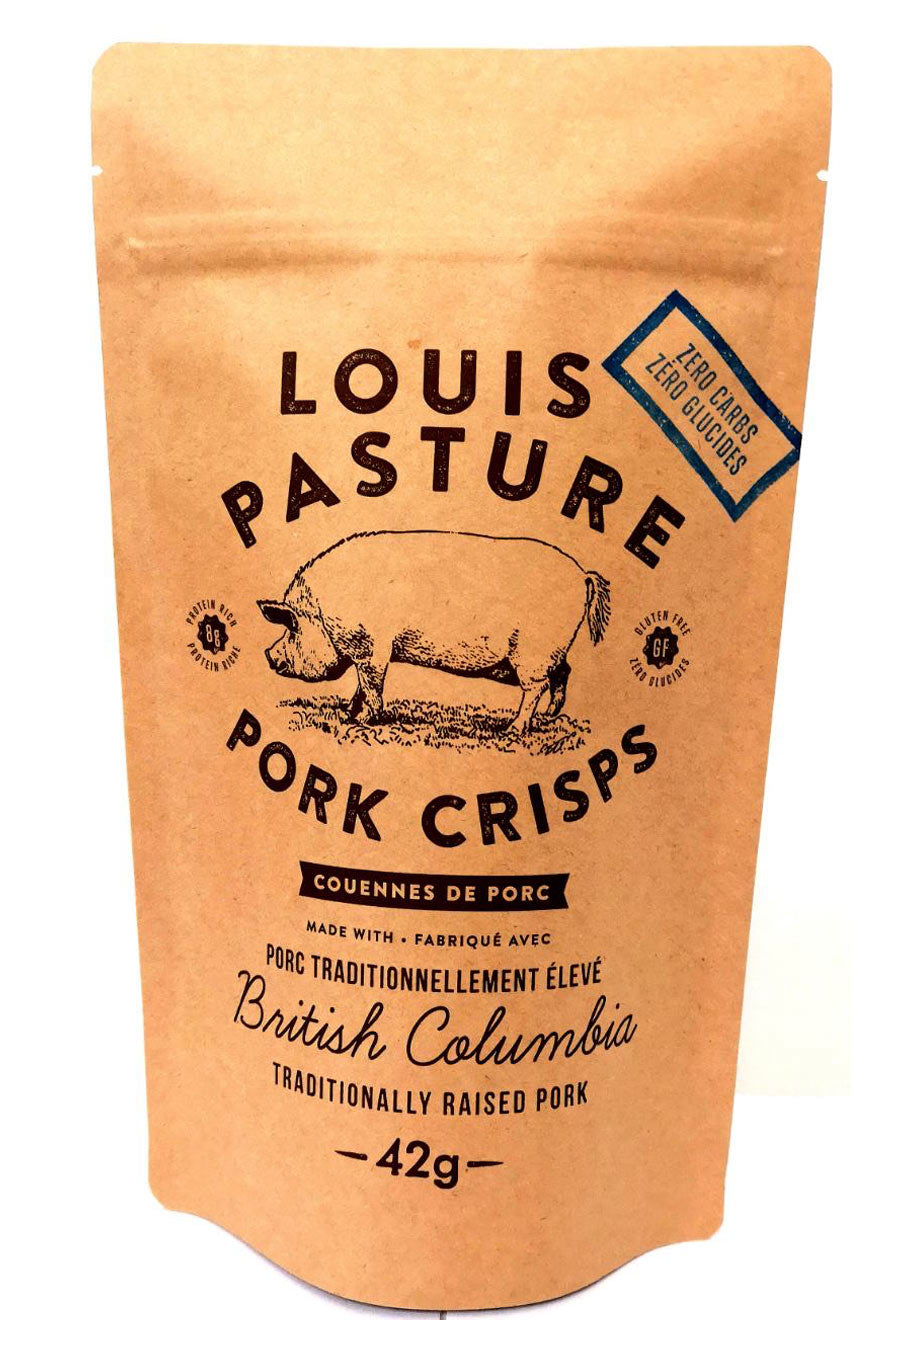 Primal Sisters Louis Pasture Pork Crisps - Plain (42g) - Lifestyle Markets